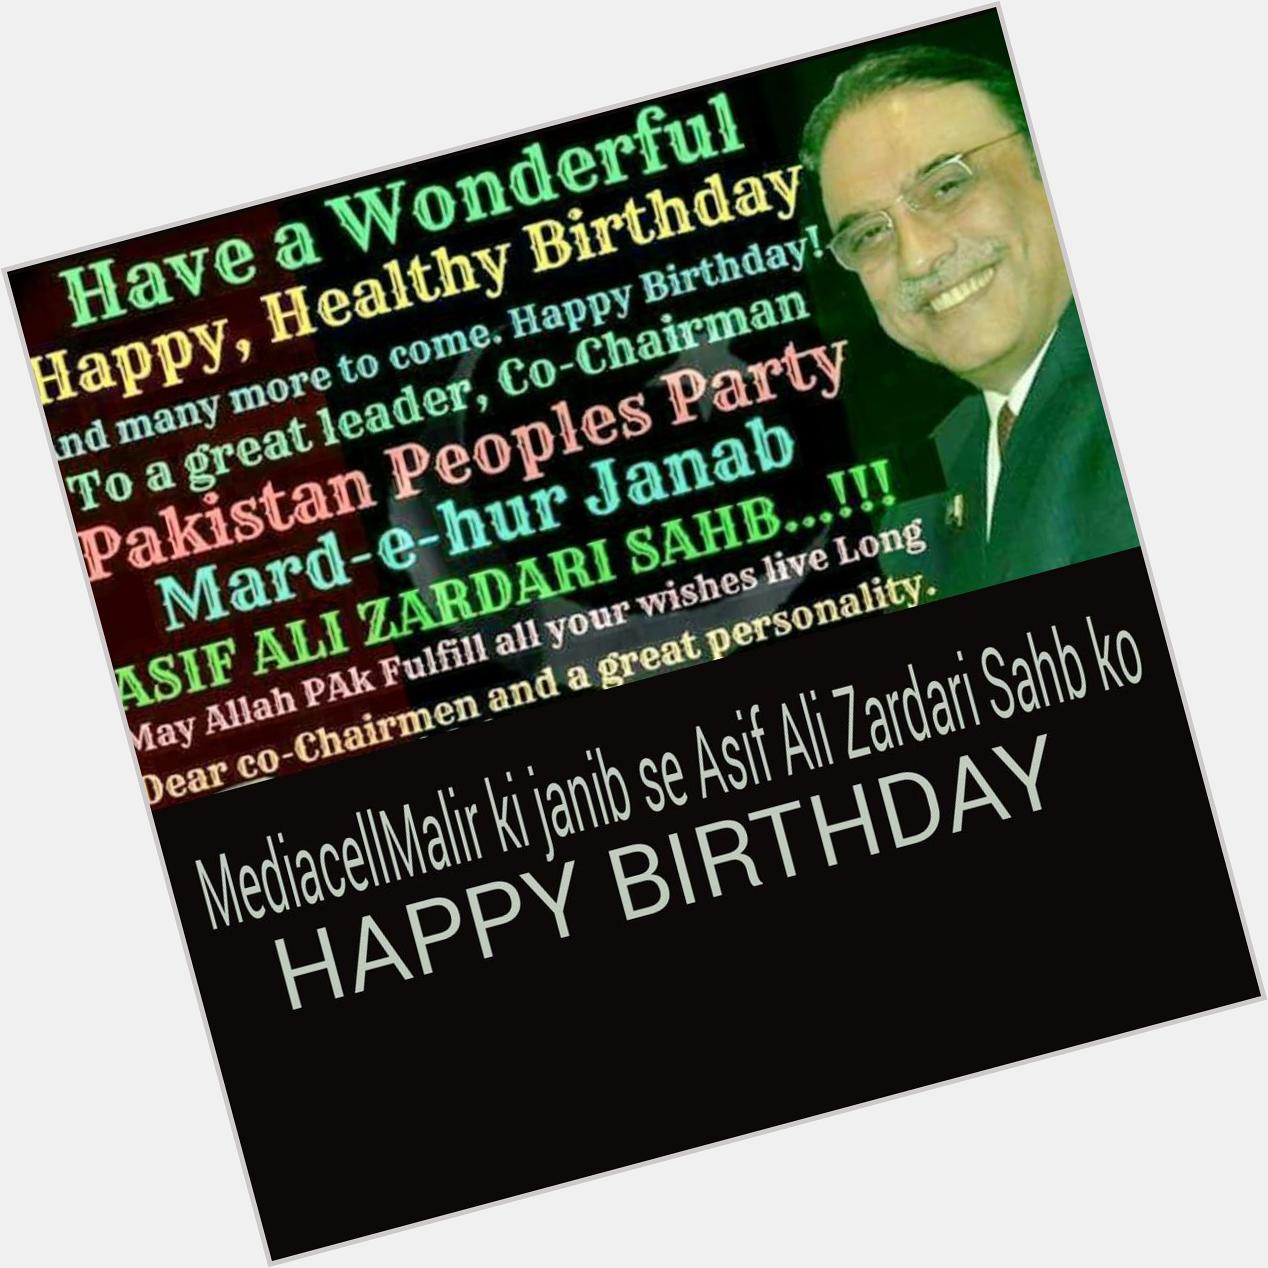 Pakistan Ki Shan Pakistan Ki Jan Mard-U-Hur Janab Asif Ali Zardari Sahib Wish U Happy Birthday 